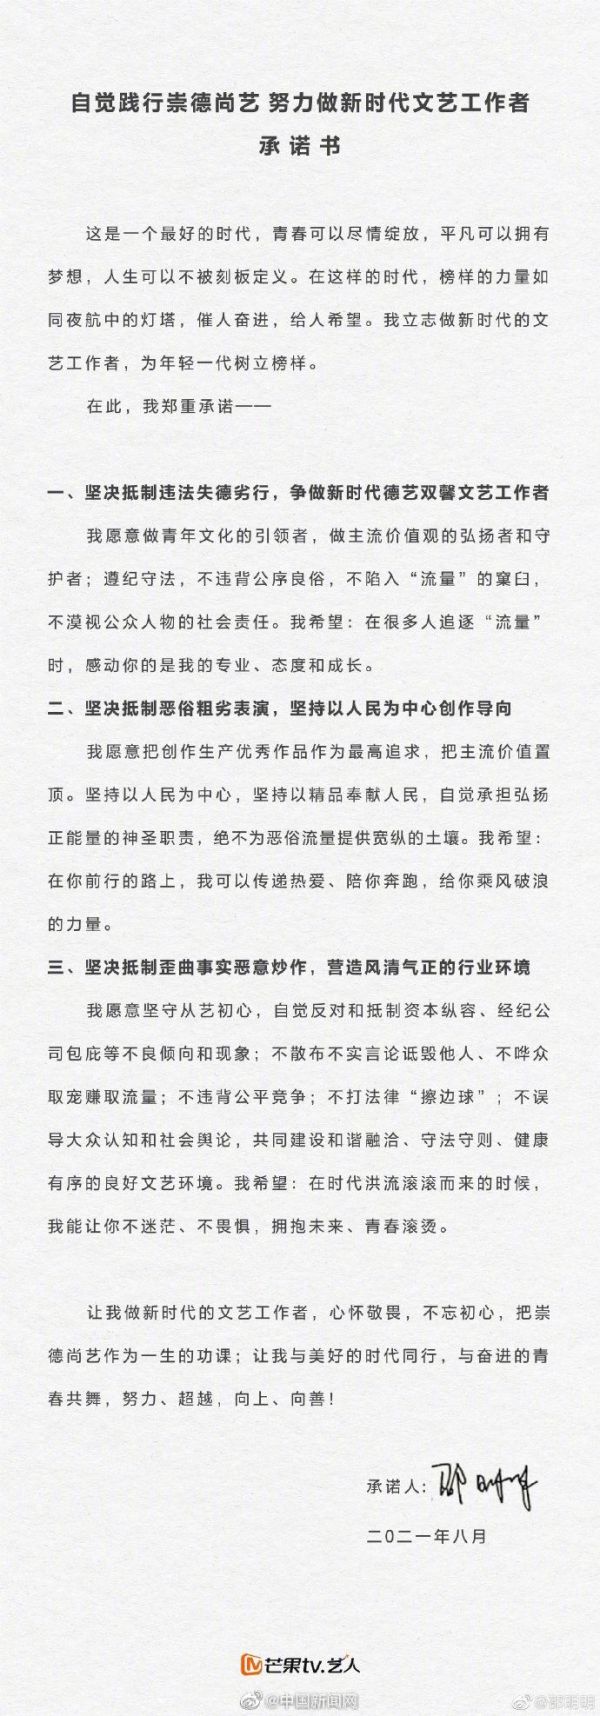 吳亦凡被捕後，中國湖南衛視芒果TV旗下的80多名藝人簽署了《自覺踐行崇德尚藝努力做新時代文藝工作者承諾書》